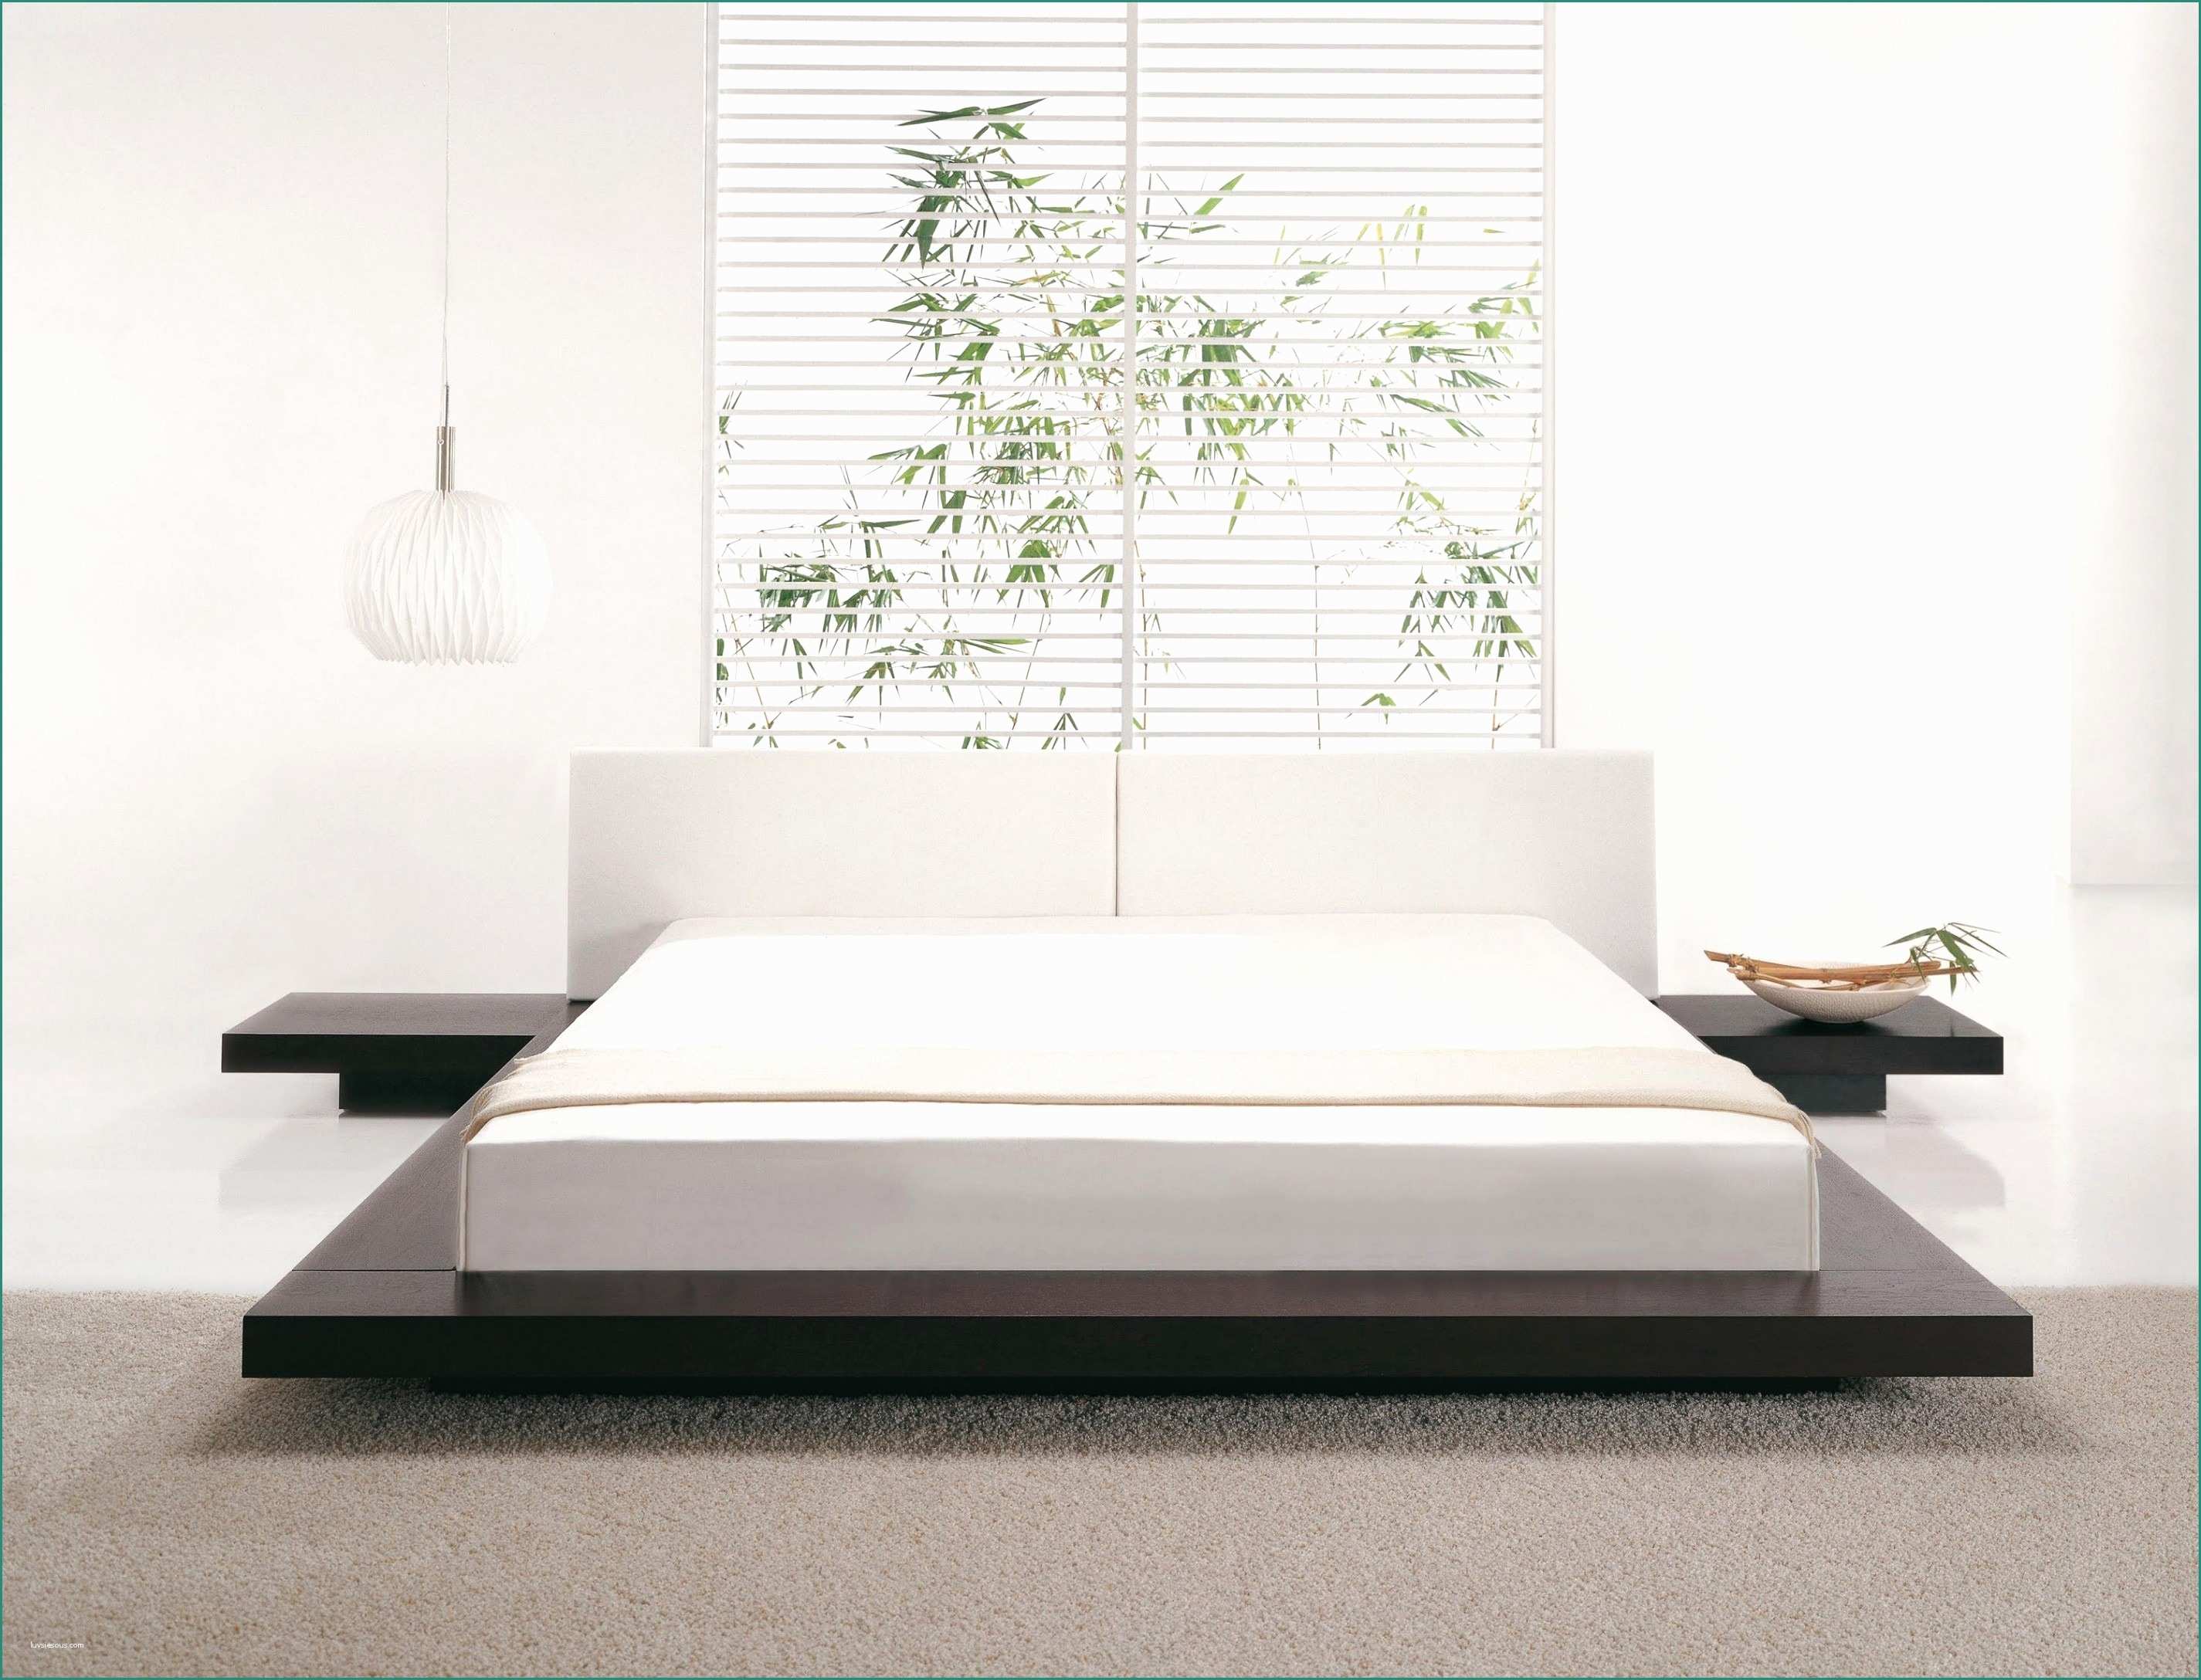 Prezzo Rame Usato E Doppelbett Gebraucht Neu Bett Ebay Kleinanzeigen Luxus Gartenmobel